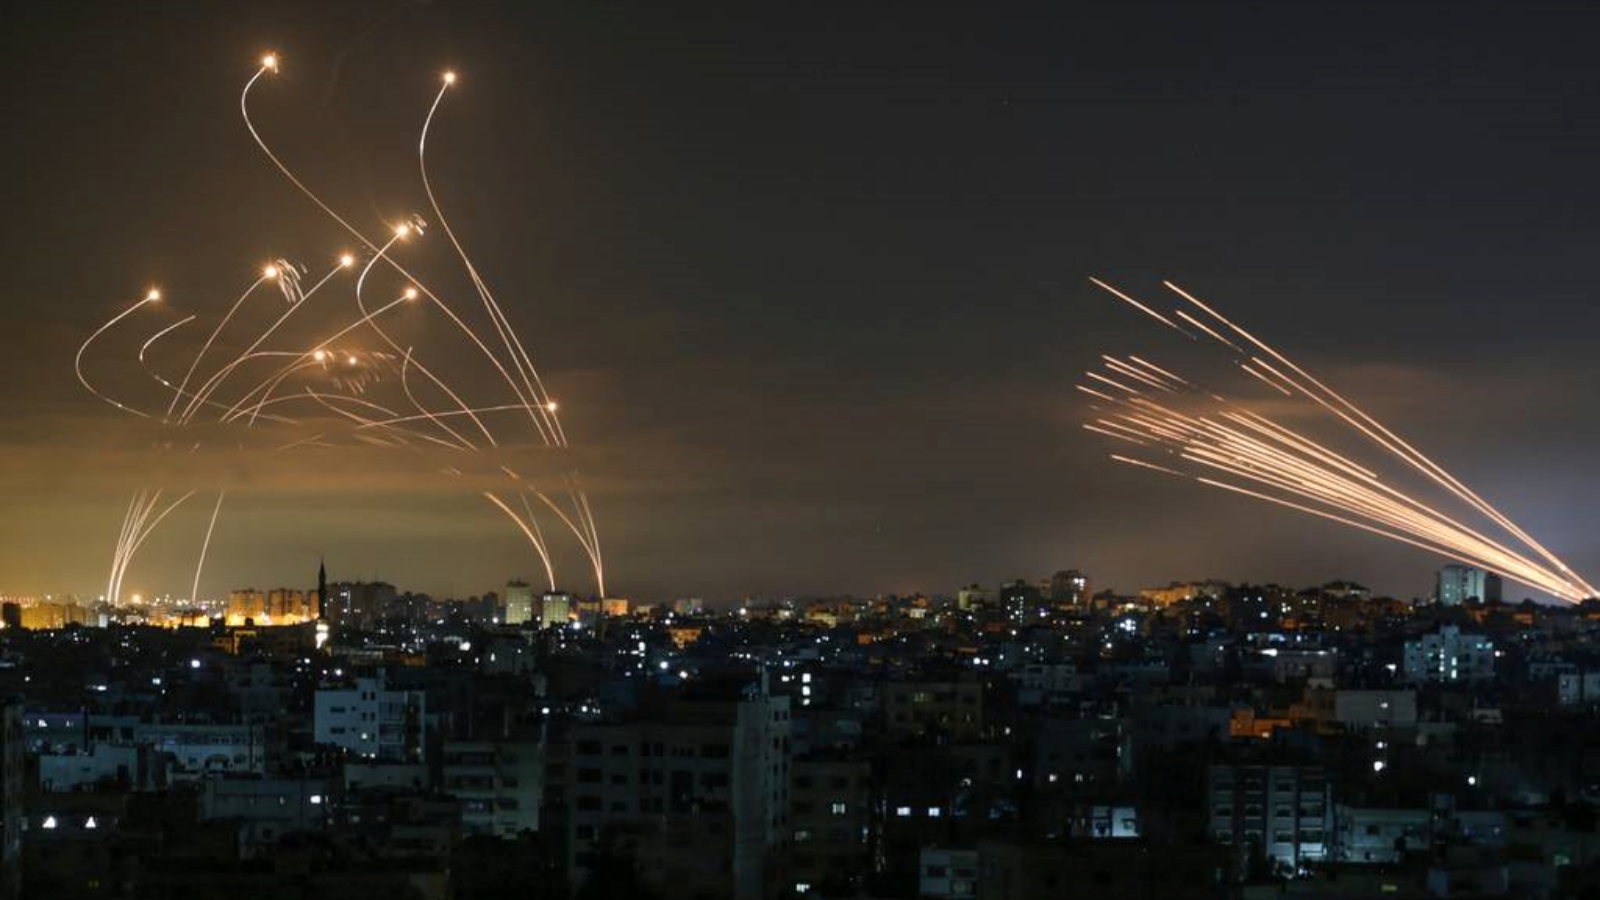 نظام دفاع صاروخي إسرائيلي من طراز القبة الحديدية، يسار، يعترض الصواريخ، يمين، التي أطلقها مسلحو حماس باتجاه جنوب إسرائيل من بيت لاهيا في شمال قطاع غزة. بتاريخ 14 أيار/ مايو 2021.